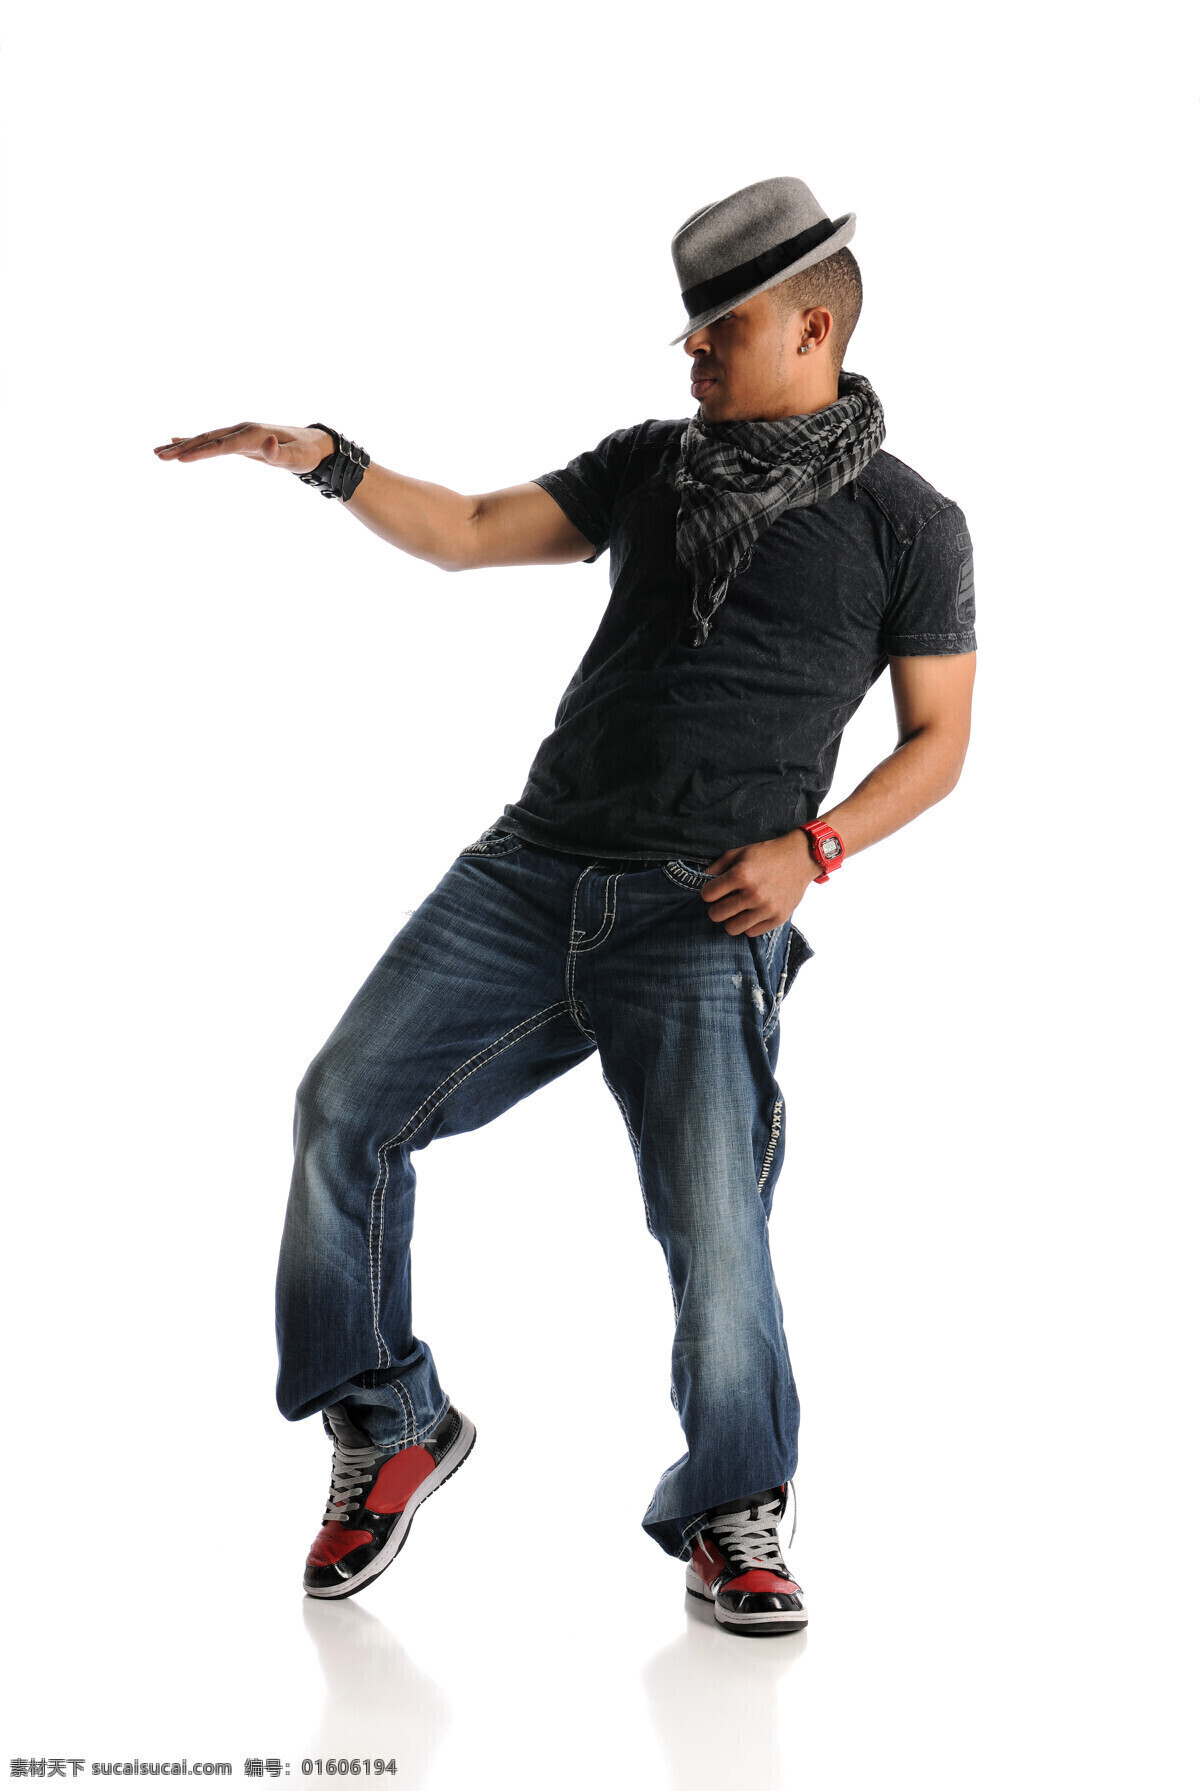 跳 街舞 男人 跳舞 音乐 嘻哈 风格 影音娱乐 生活百科